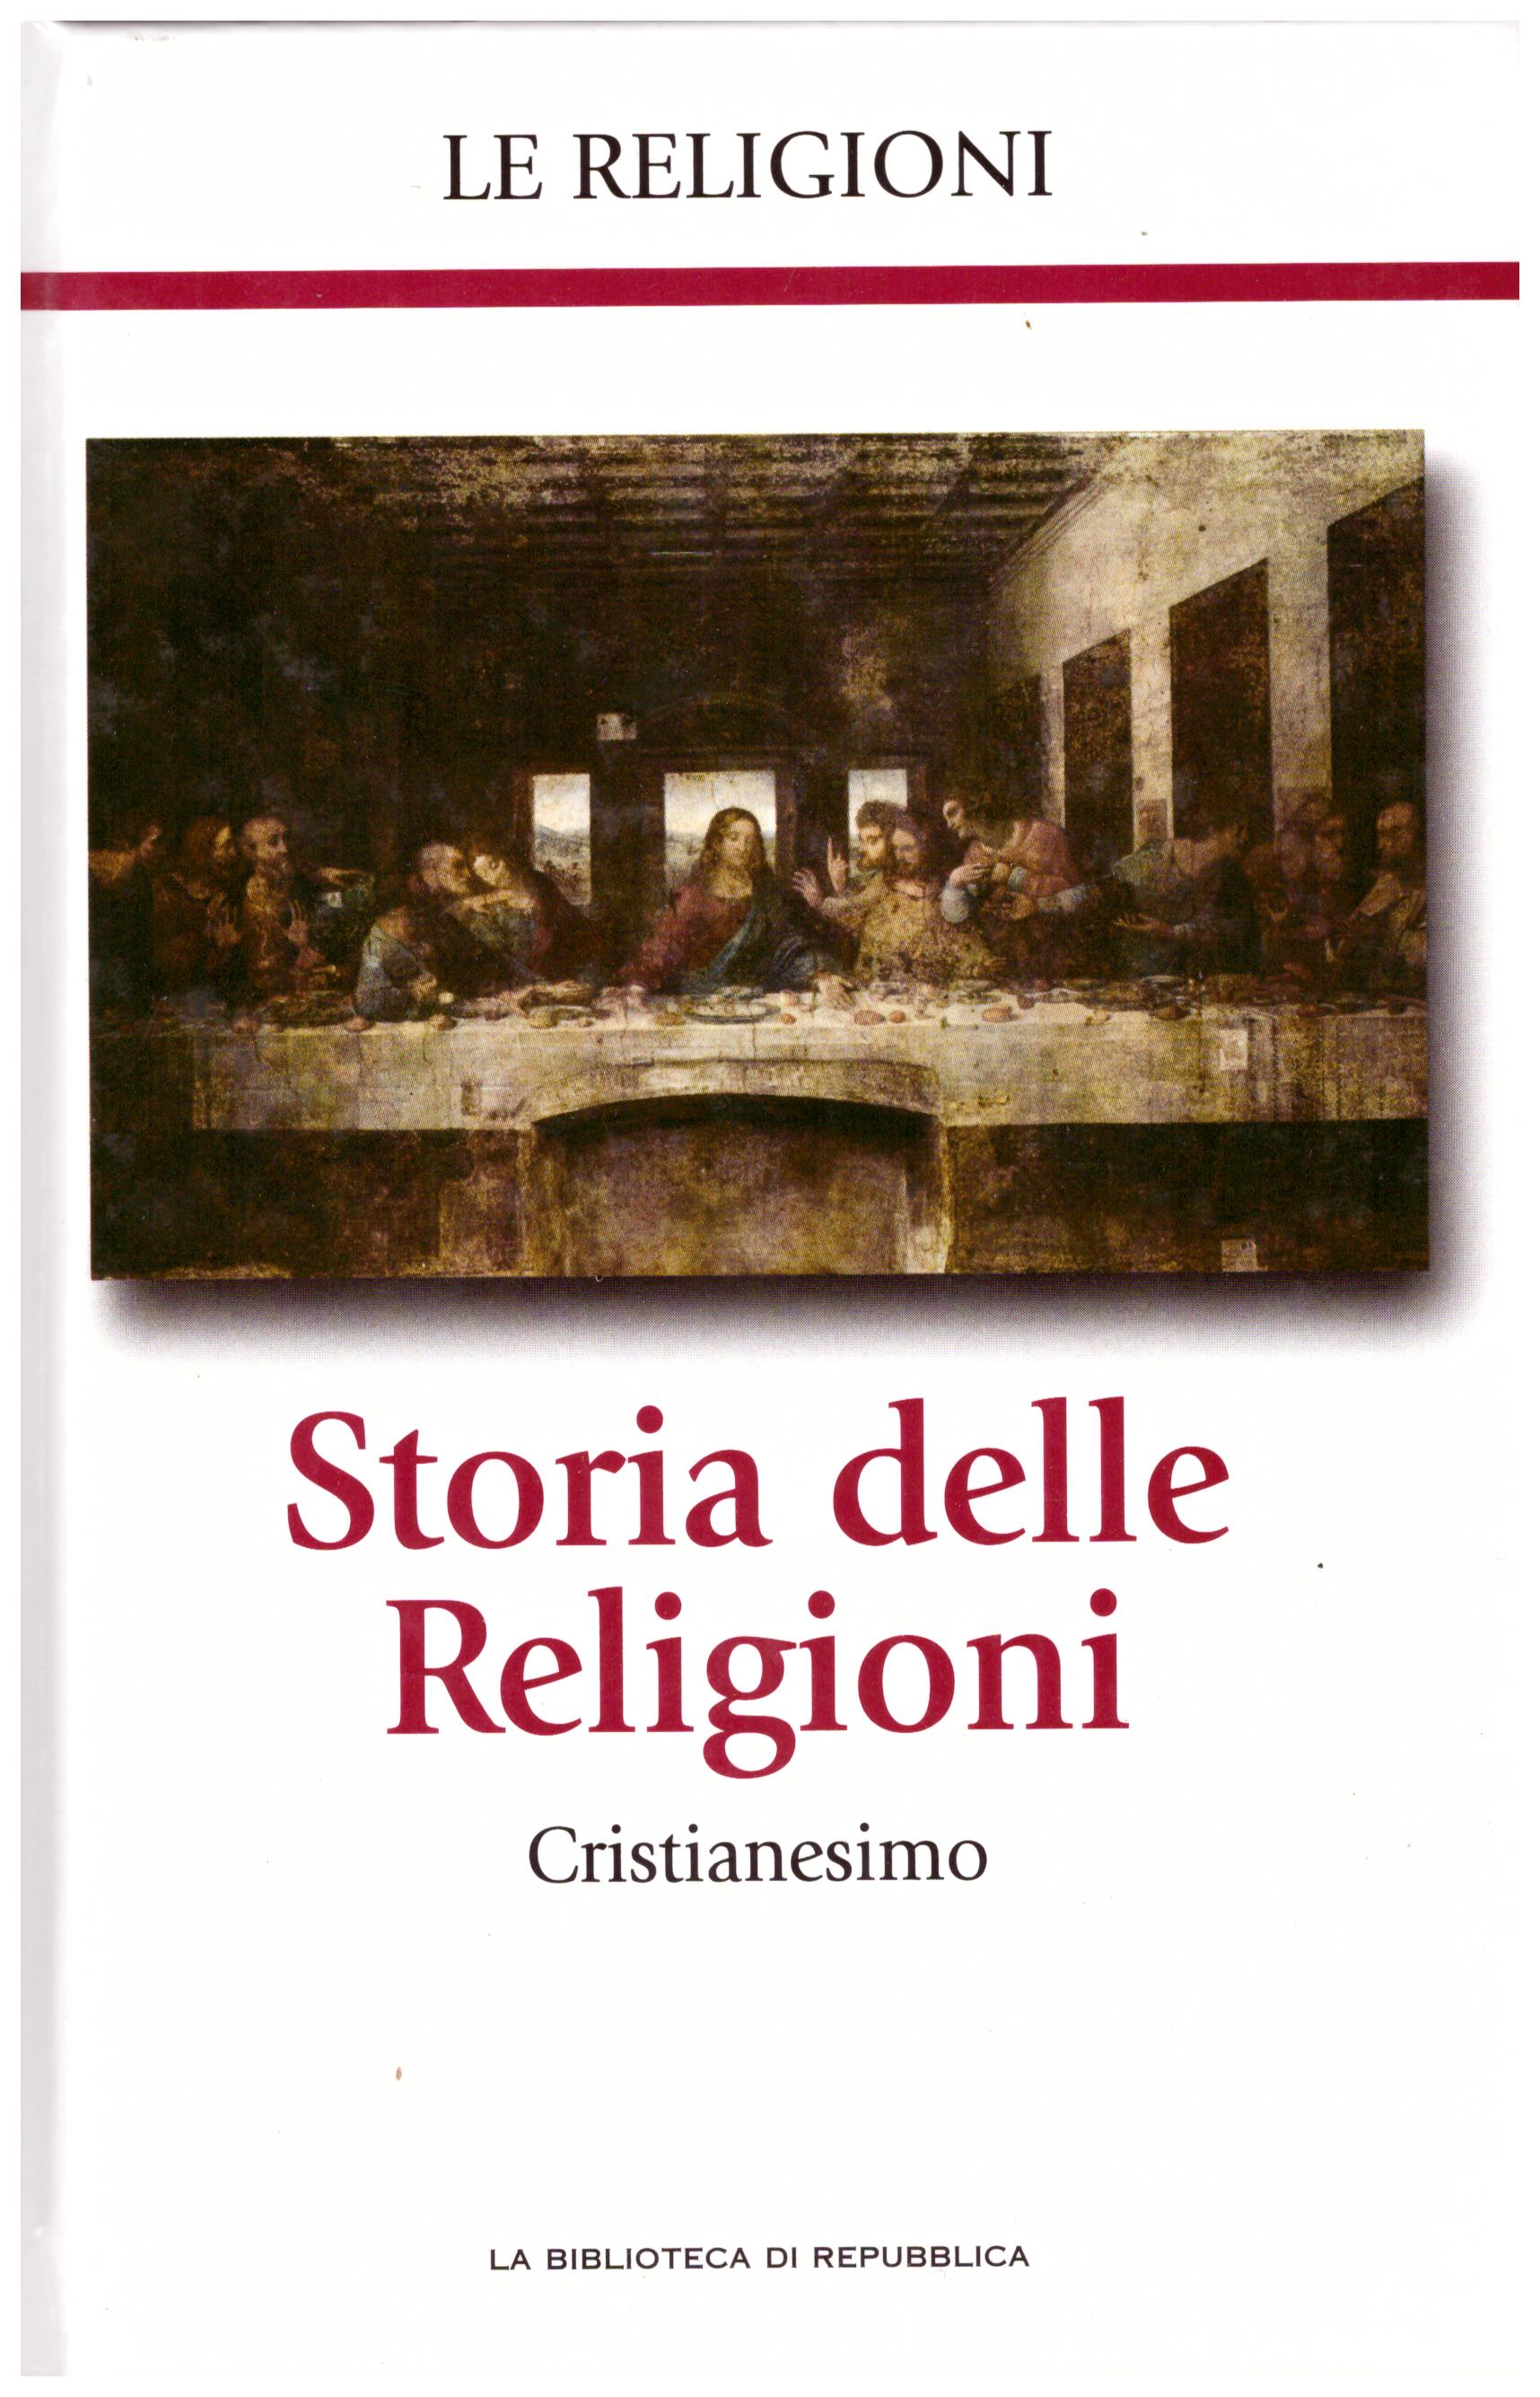 Titolo: Le religioni, Storia delle religioni, Il Cristianesimo N.4      Autore: AA.VV, la biblioteca di Repubblica     Editore: Piemme